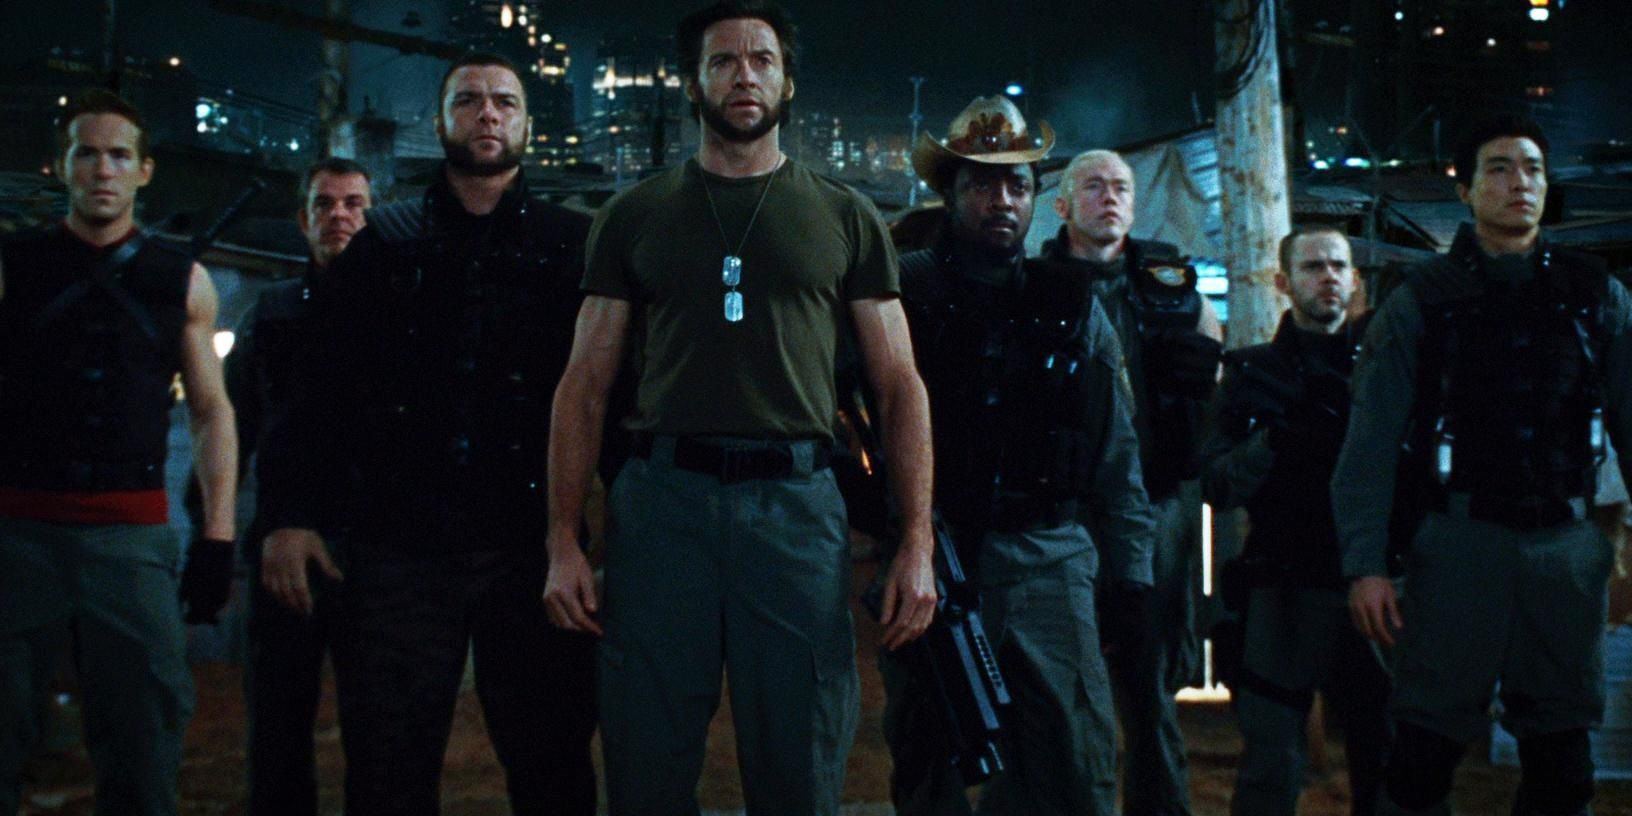 The Weapon X team in X-Men Origins Wolverine